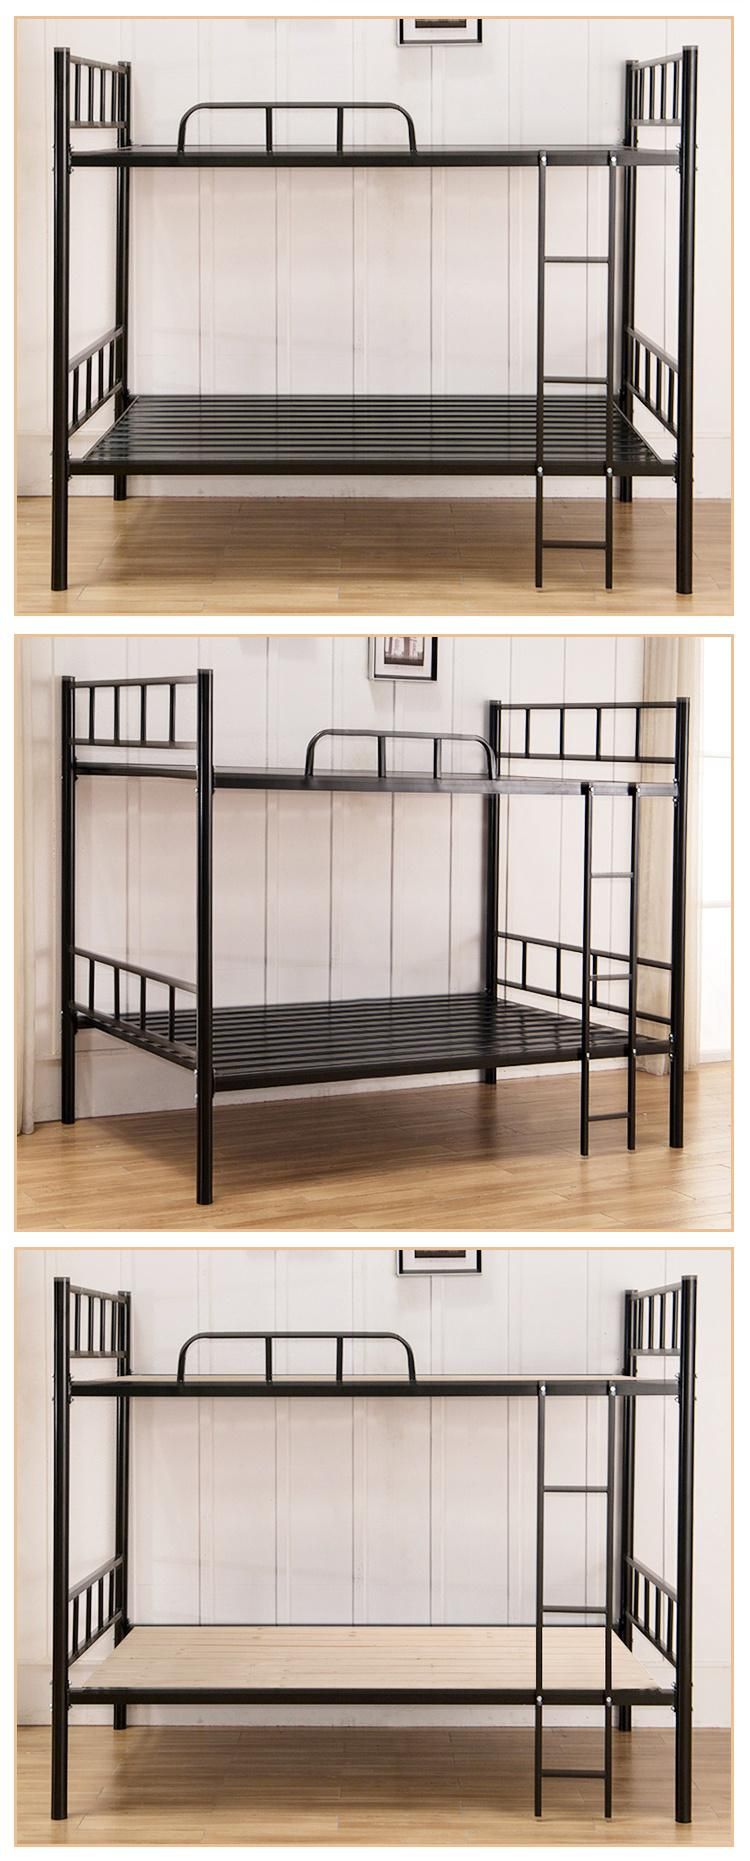 Low Price Modern Metal Iron Bunk Bed Furniture Dorm Bedroom Metal Double Decker Bed